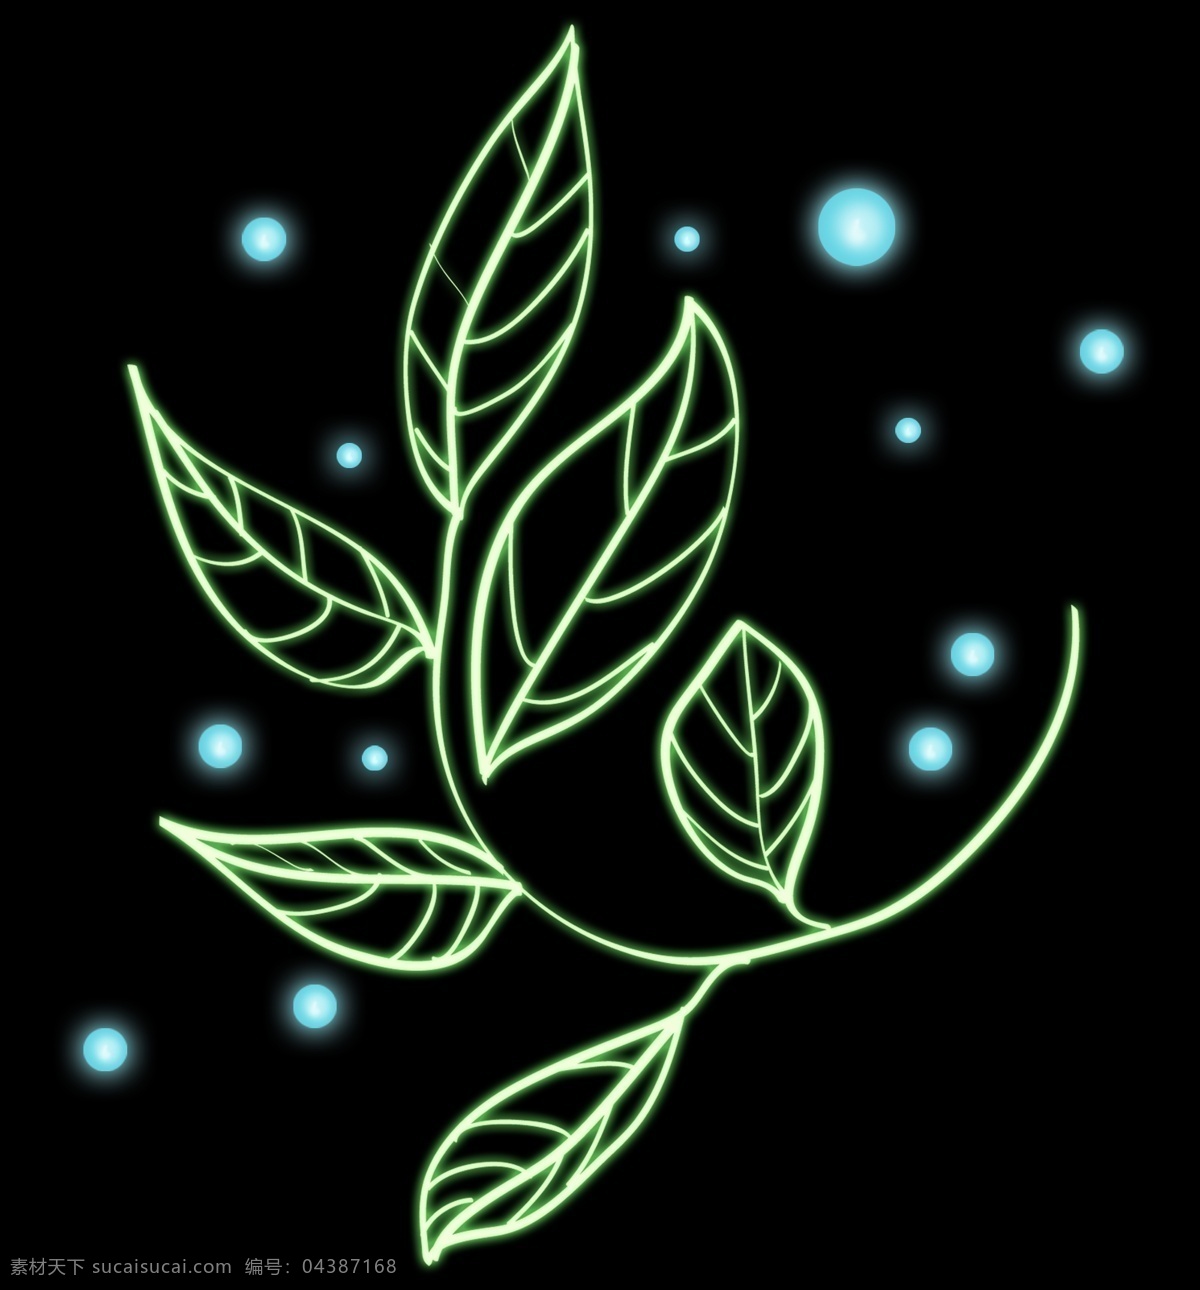 绿色灯管植物 灯光植物 光感叶子 春天 植物 灯管叶子 灯管植物 绿色 发光